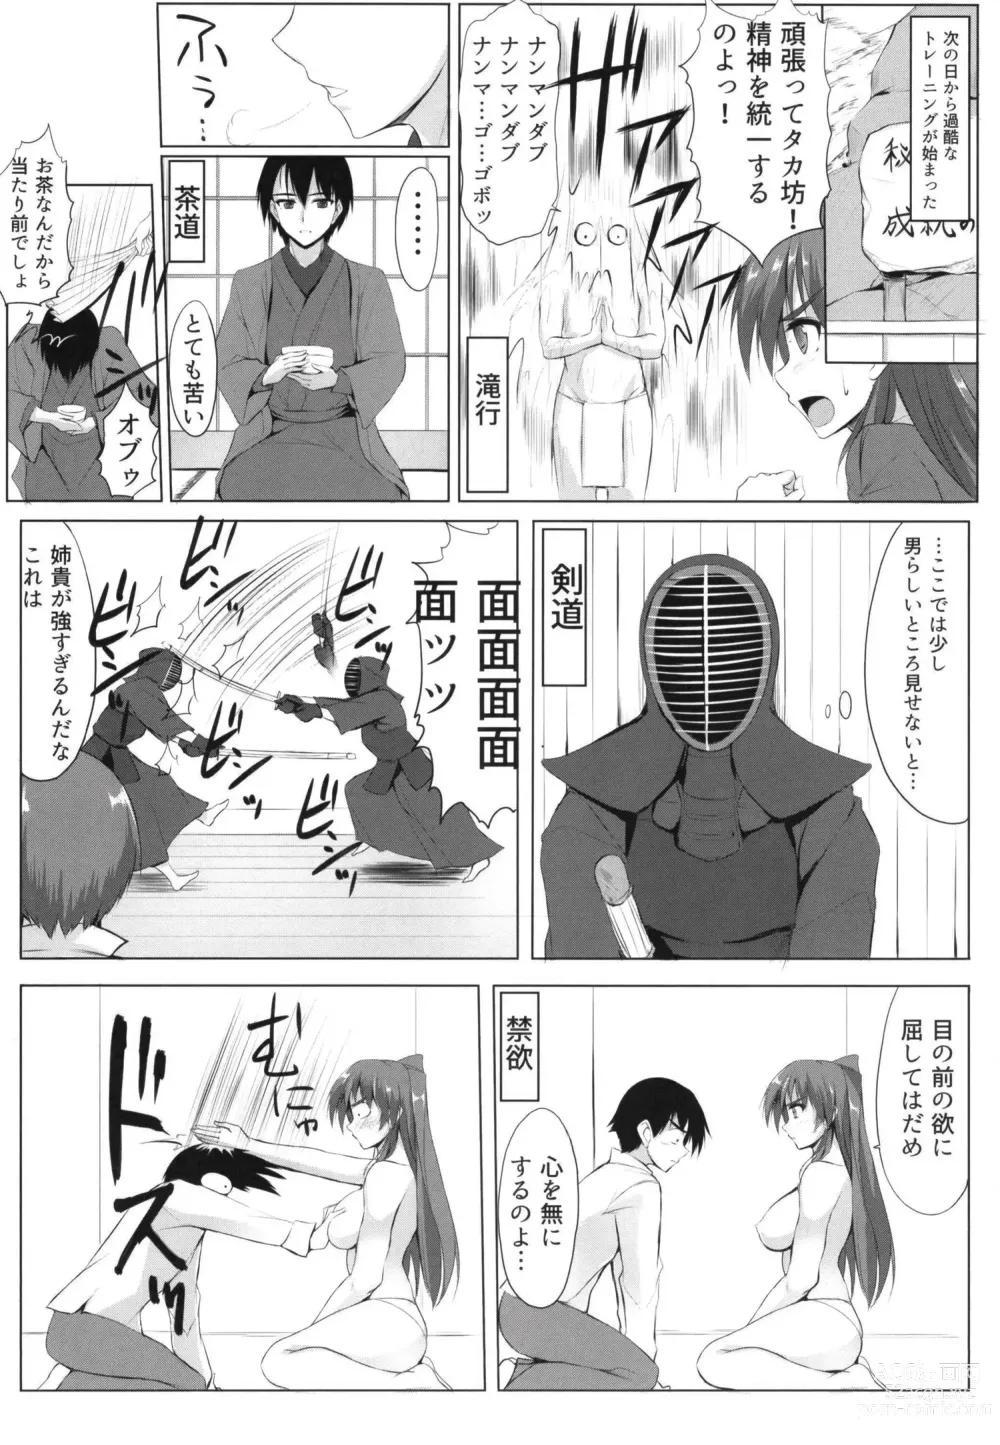 Page 5 of doujinshi Wasurenagusa